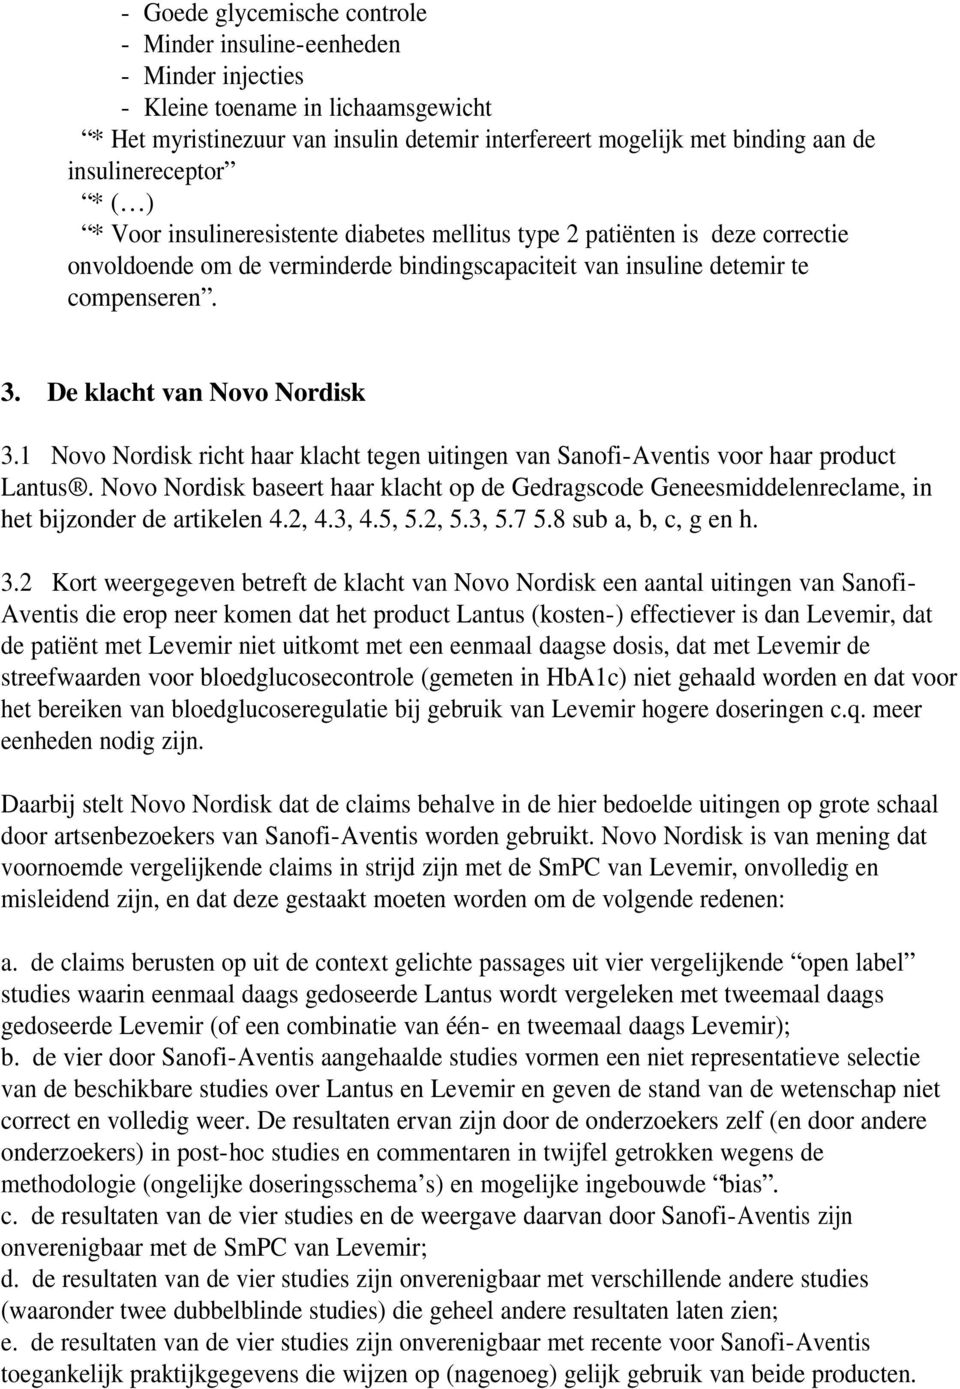 De klacht van Novo Nordisk 3.1 Novo Nordisk richt haar klacht tegen uitingen van Sanofi-Aventis voor haar product Lantus.